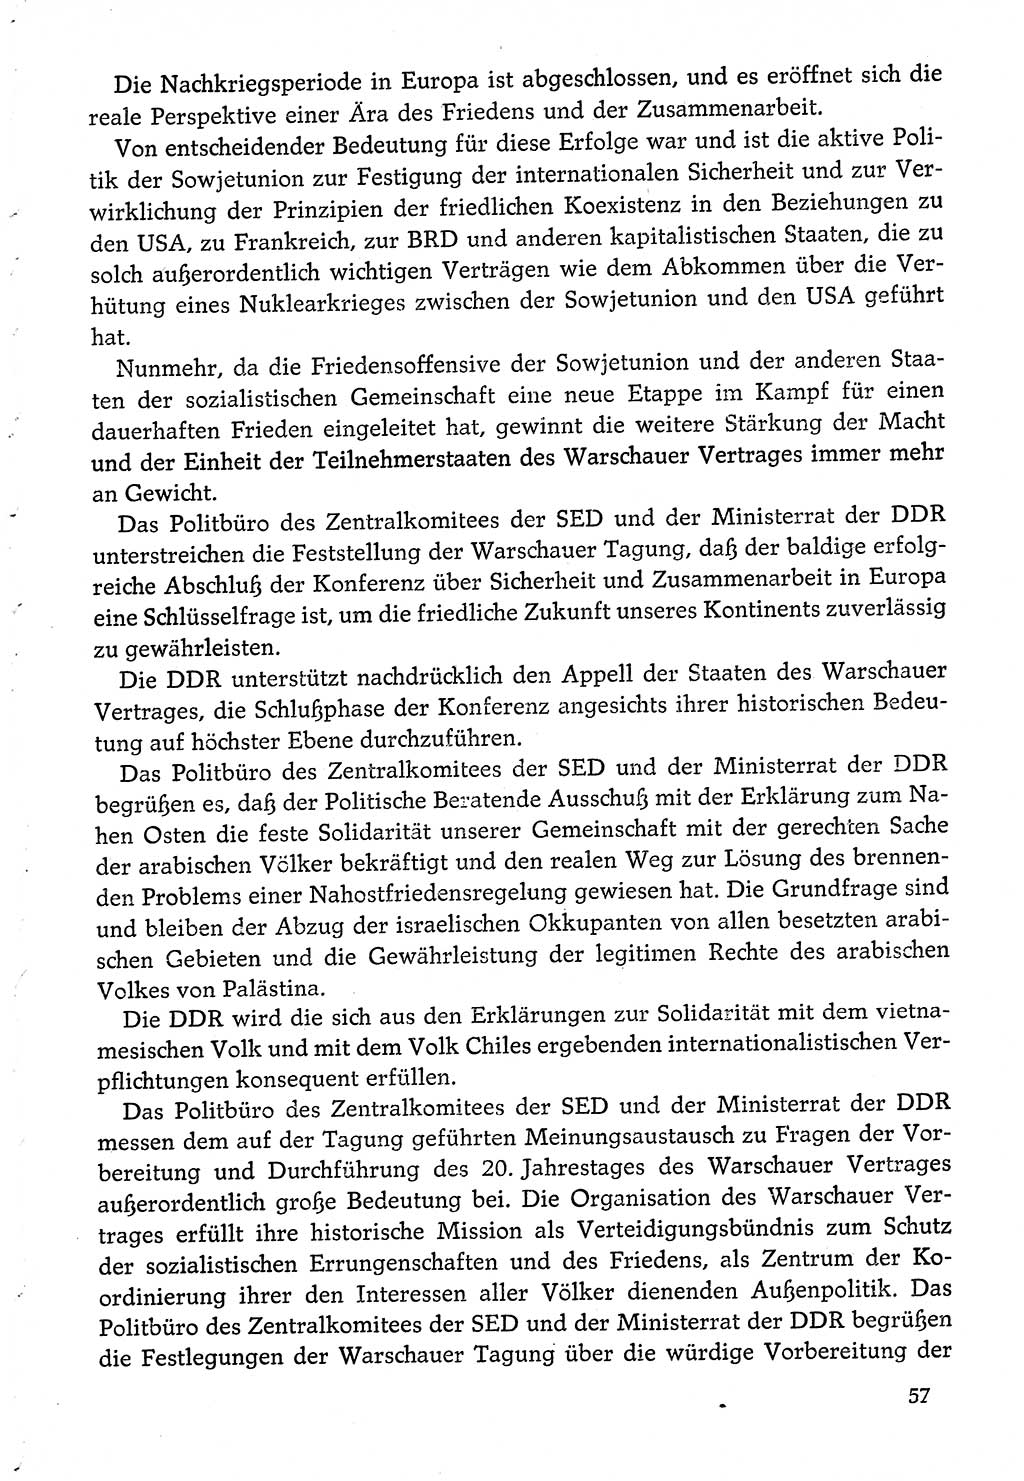 Dokumente der Sozialistischen Einheitspartei Deutschlands (SED) [Deutsche Demokratische Republik (DDR)] 1974-1975, Seite 57 (Dok. SED DDR 1978, Bd. ⅩⅤ, S. 57)